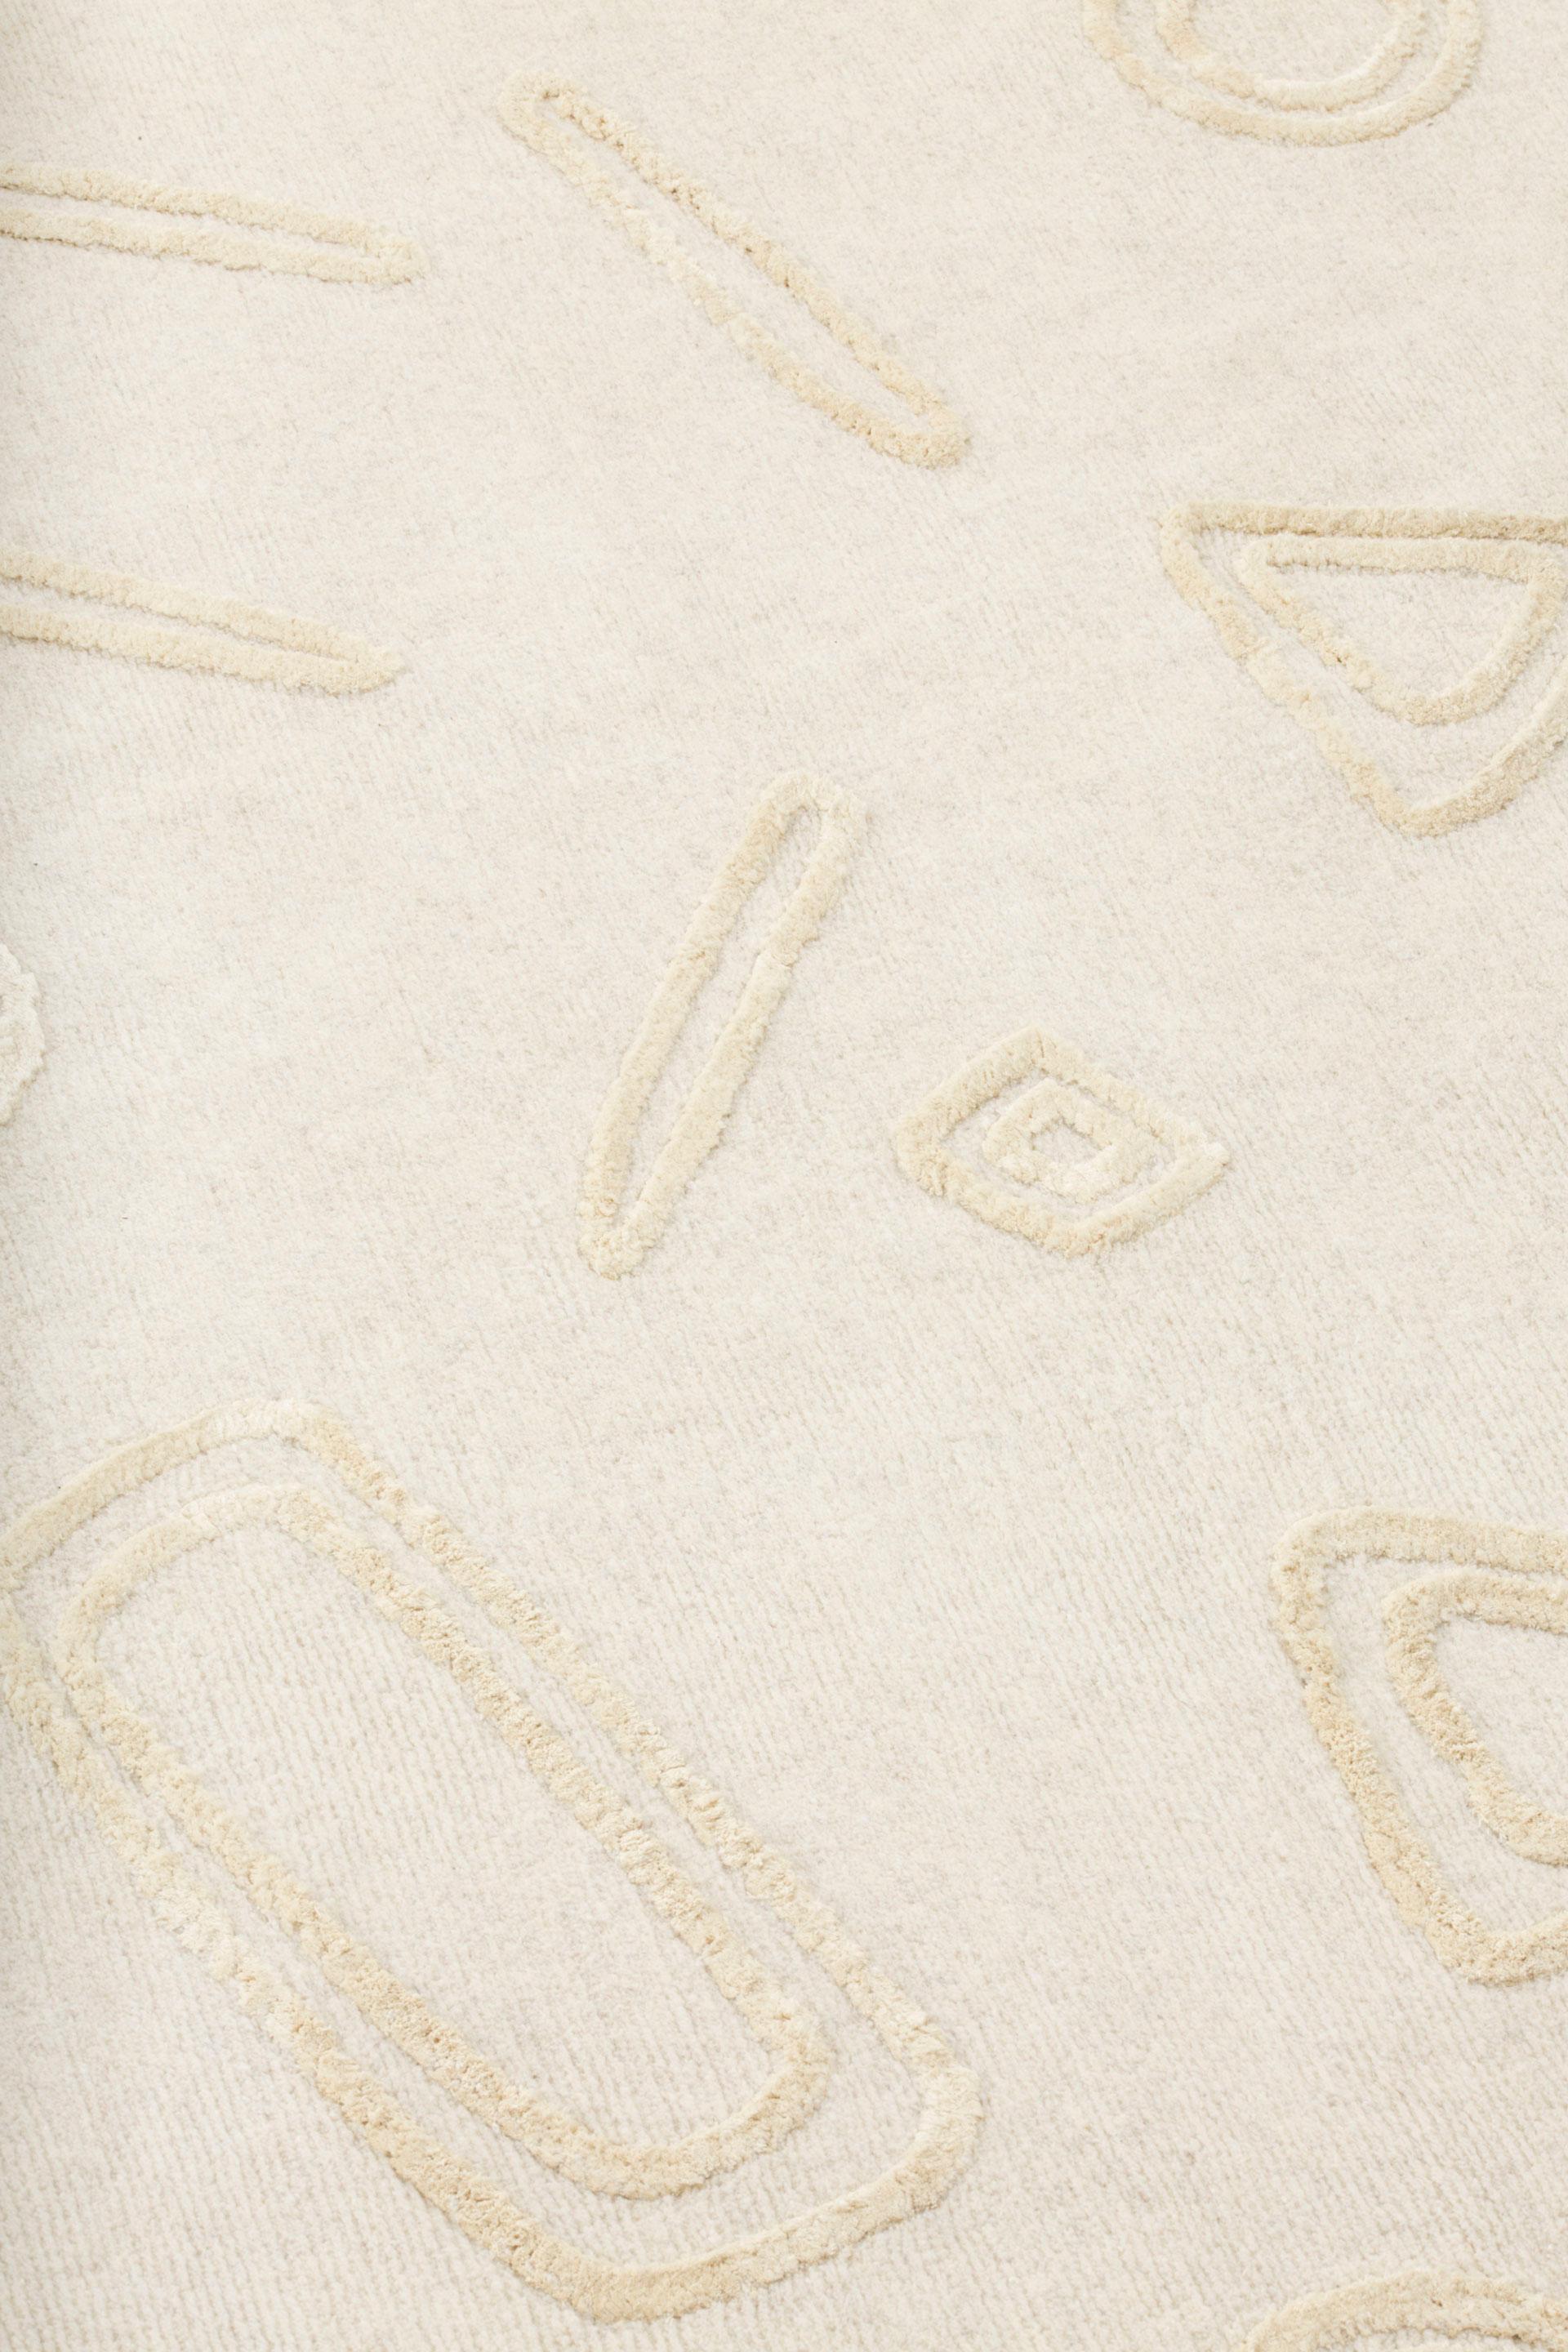 Moderne cc-tapis NAÏF GEOMETRIES tapis fait main en laine par David/Nicolas - EN STOCK en vente